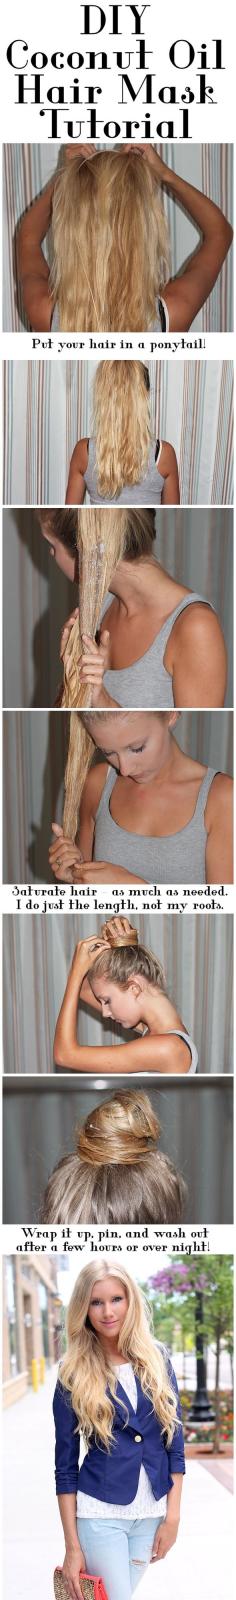 DIY Beauty: Coconut Oil Hair Mask